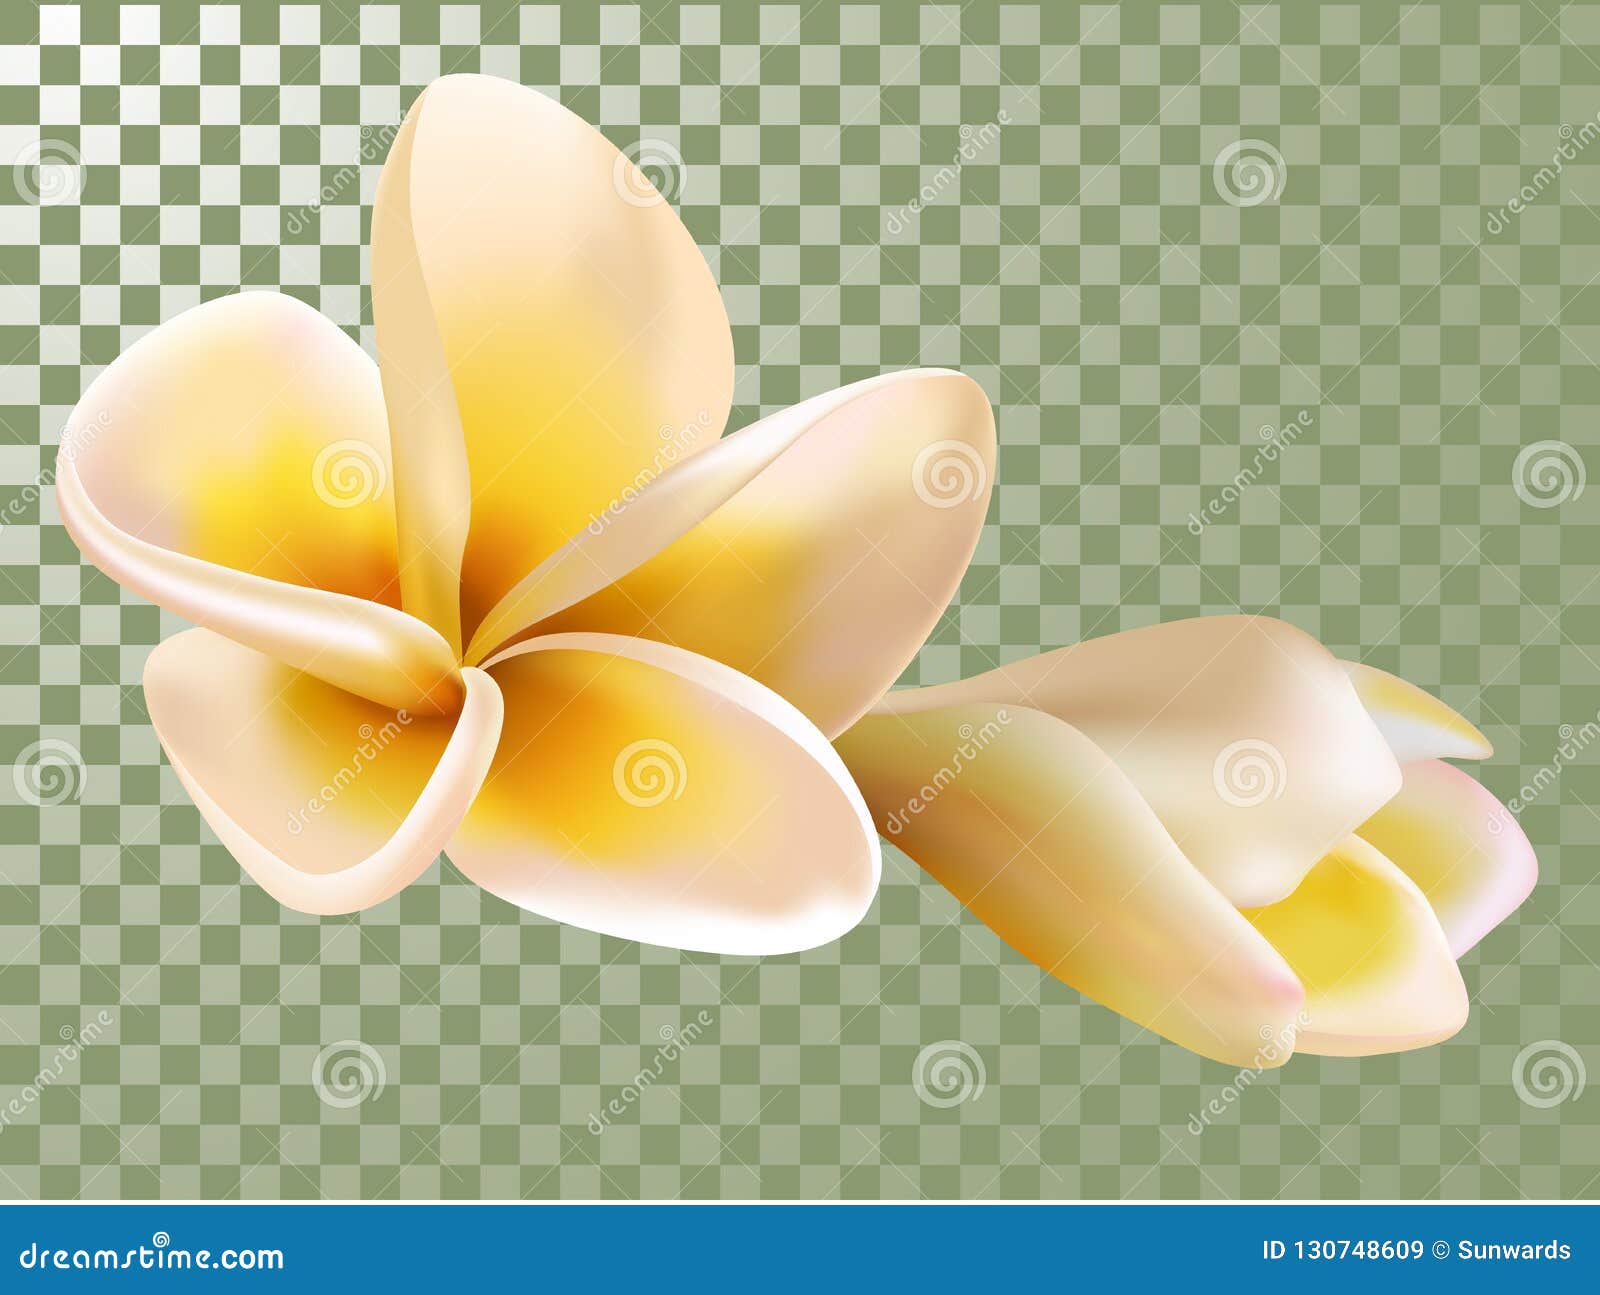 Άτιτλος-2. Plumeria ή λουλουδιών και οφθαλμών Frangipani διανυσματική απεικόνιση Υπόβαθρο πλέγματος διαφάνειας Άνθισμα, άνθος δέντρων Καραϊβικό, της Χαβάης τροπικό λουλούδι και bourgeon απομονωμένος, σύμβολο SPA λουλούδι τροπικό